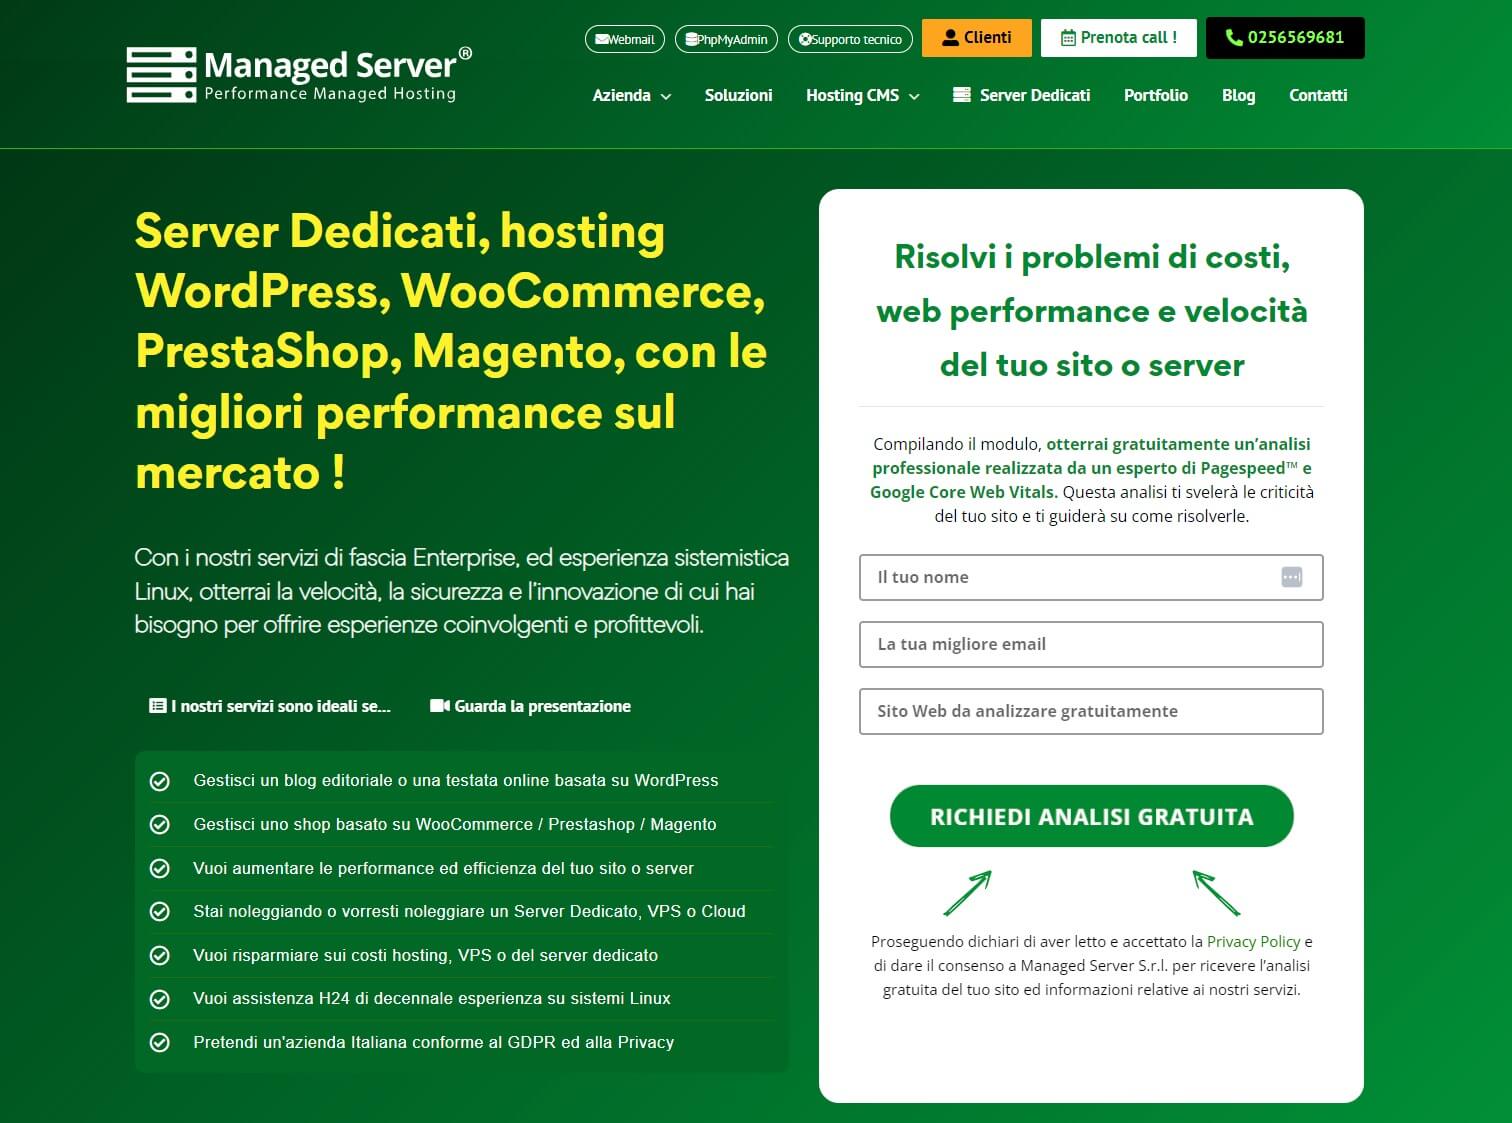 Managed Server and Managed Hosting